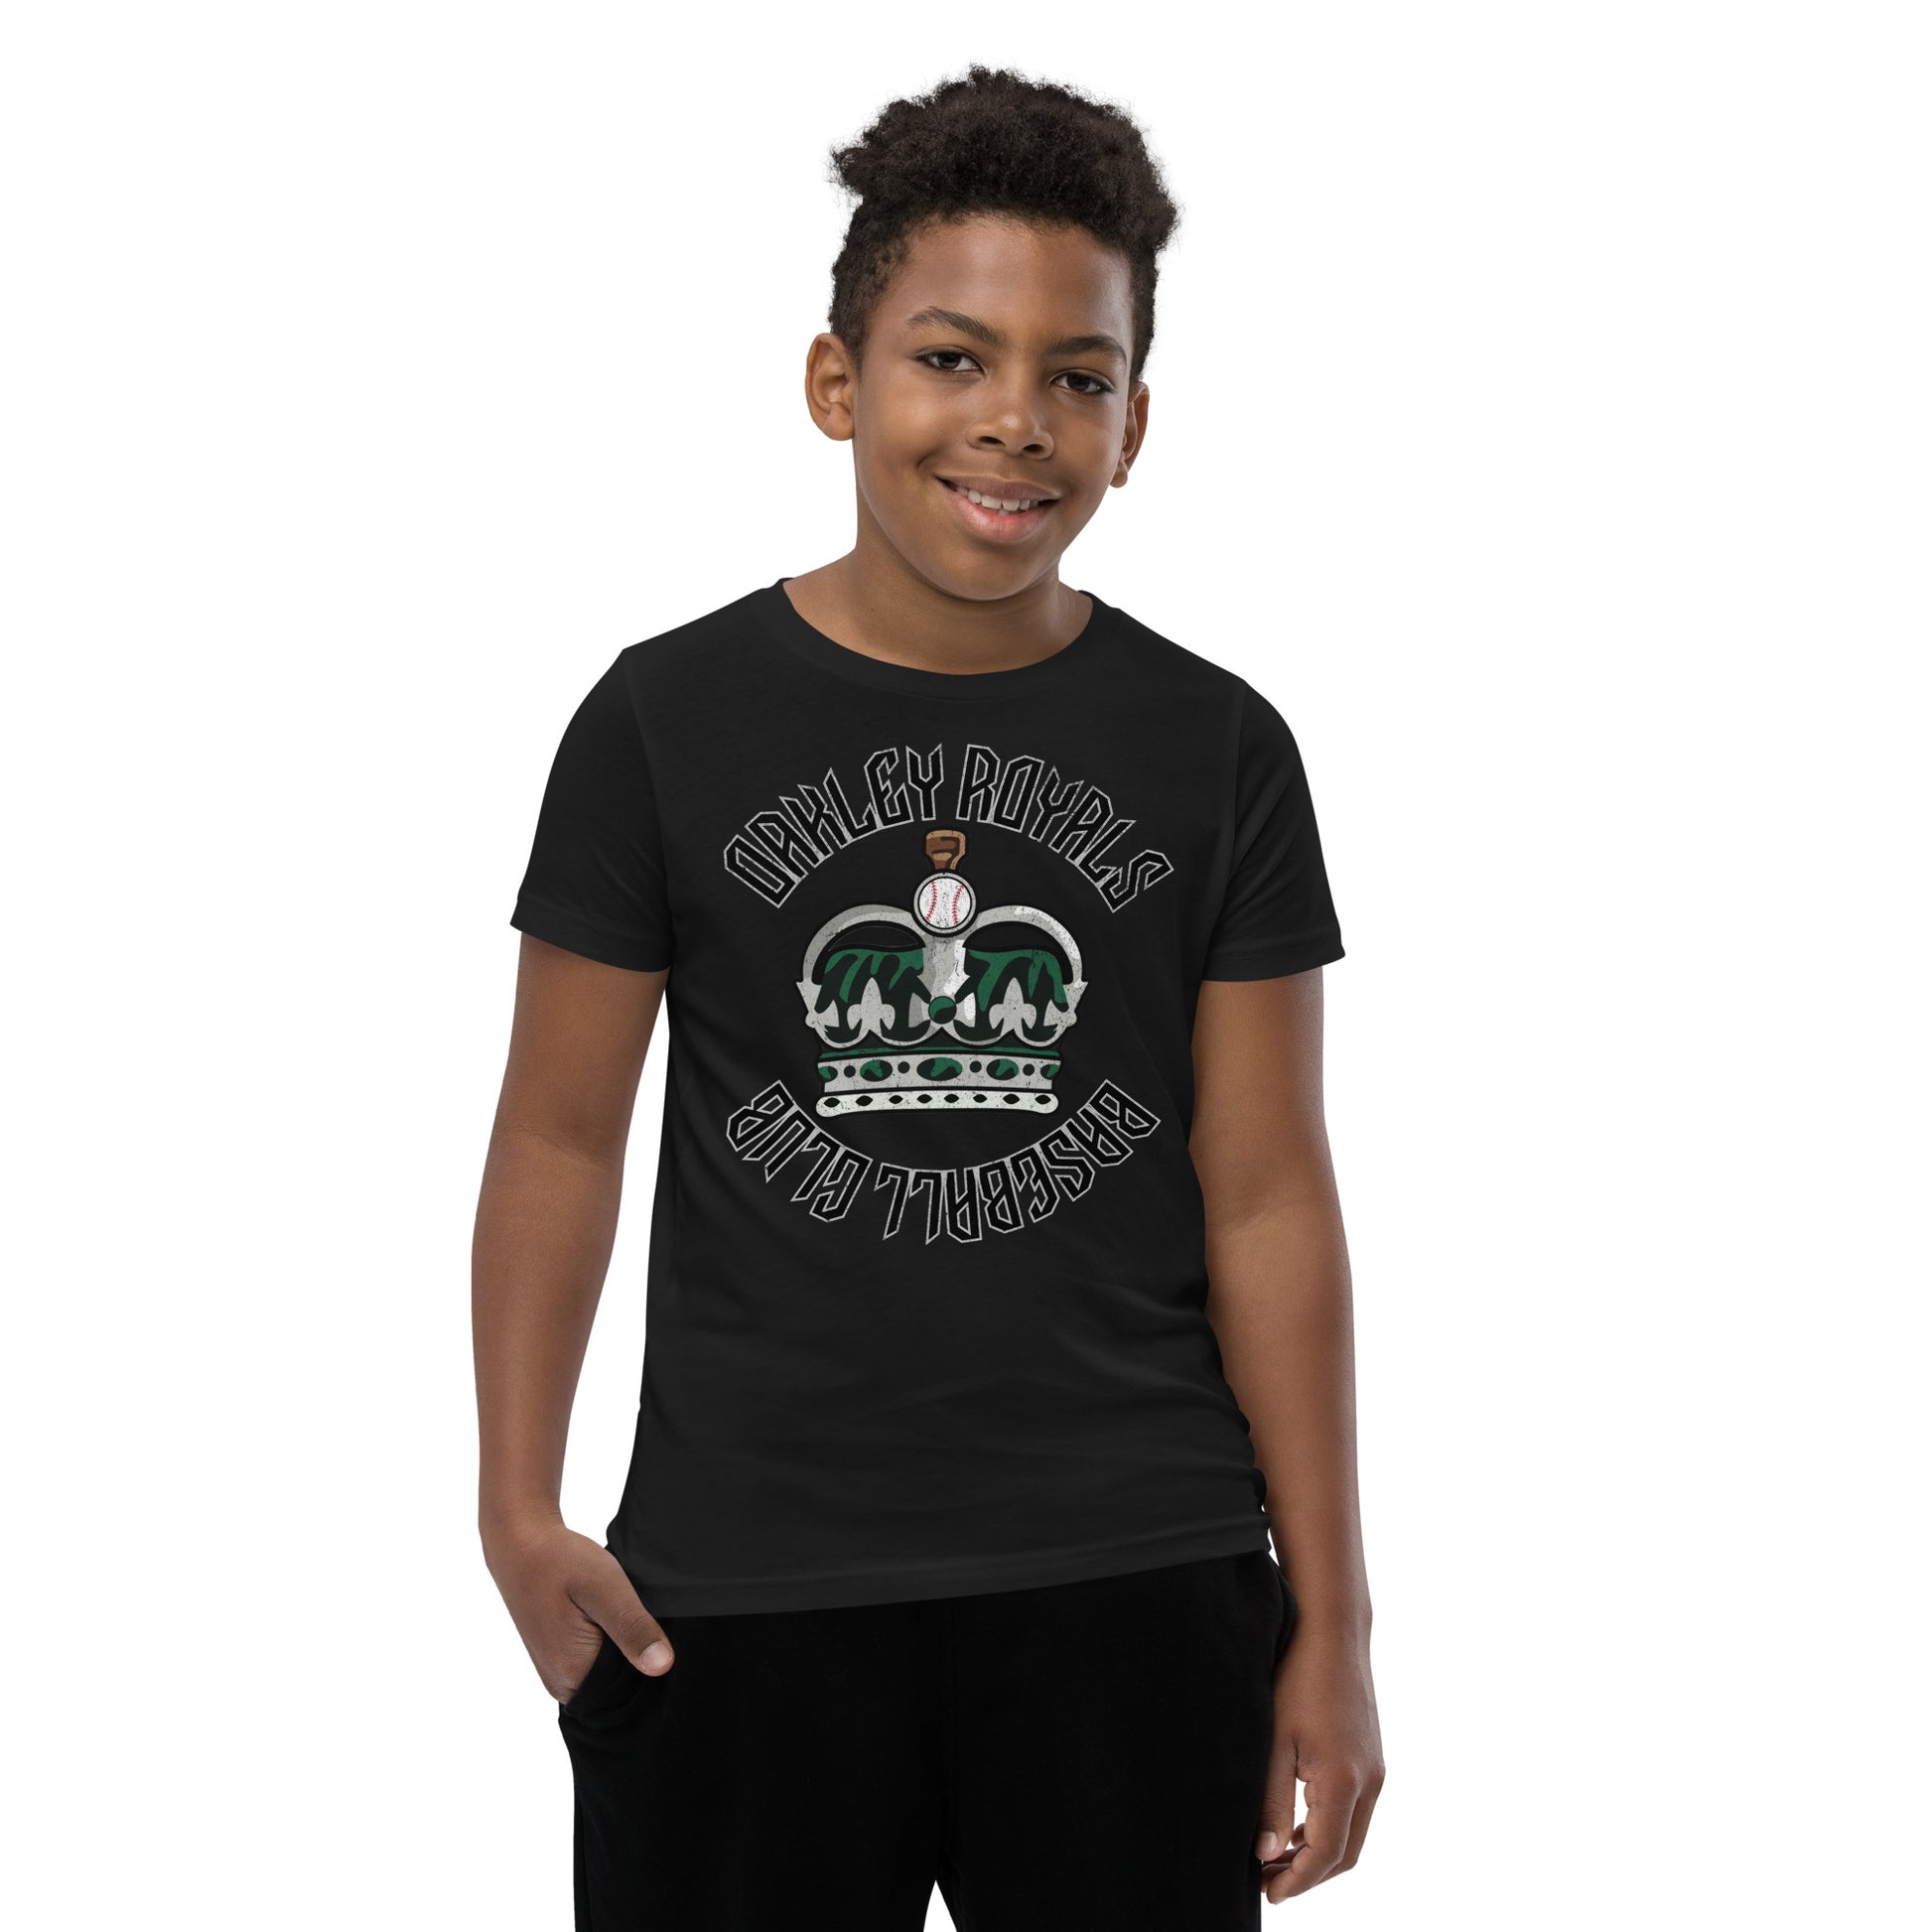 Royals Baseball Club Youth Short Sleeve T-Shirt – Oakley Royals Drip